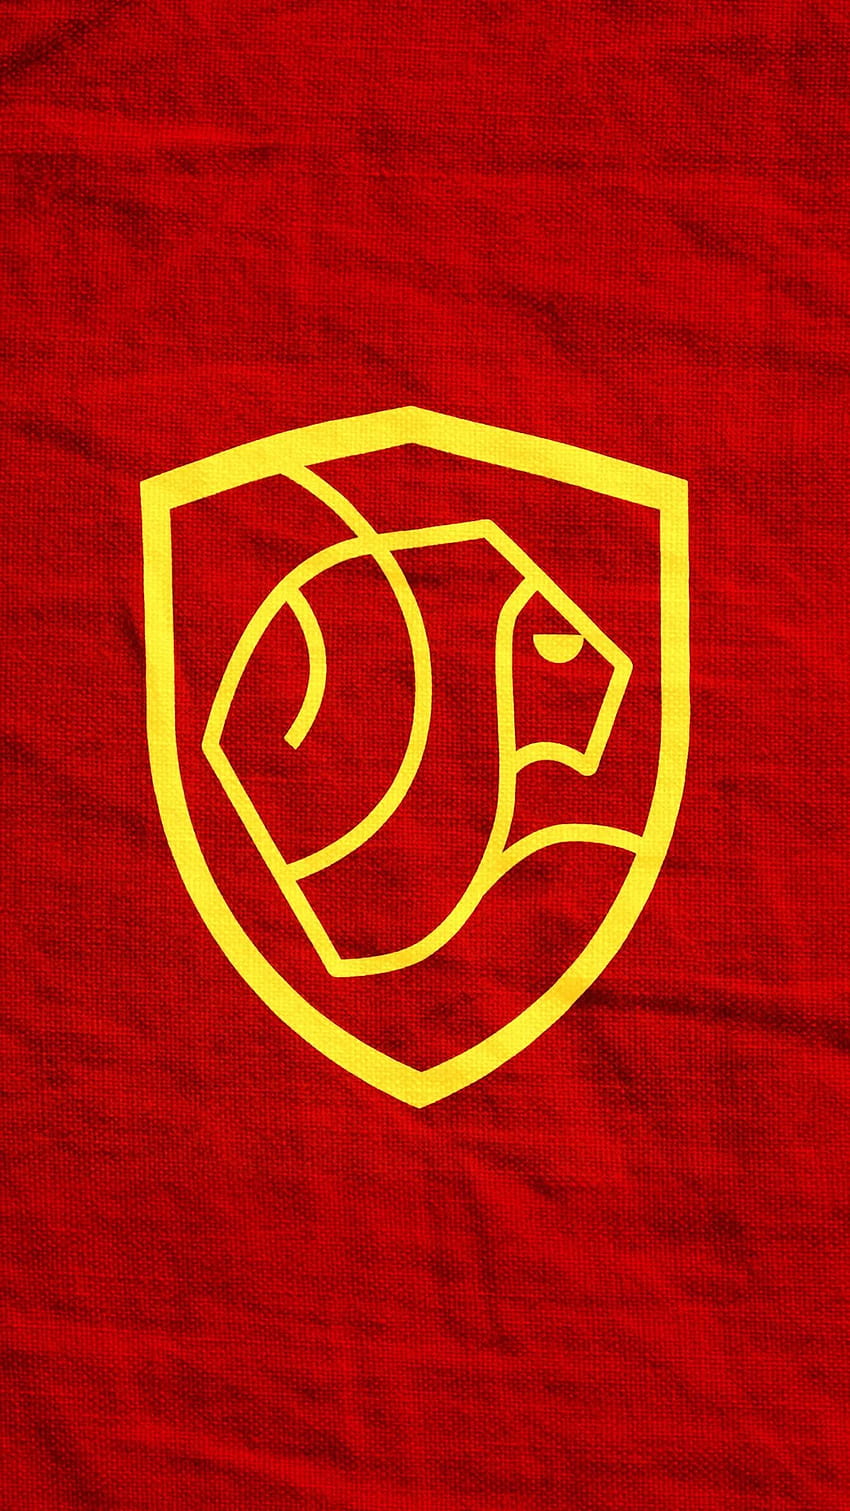 Gryffindor dla każdego na podstawie logo świata czarodziejów (i nie miałem pojęcia, jak je opublikować razem, więc zrobiłem 4 posty (przepraszam)): harrypotter Tapeta na telefon HD